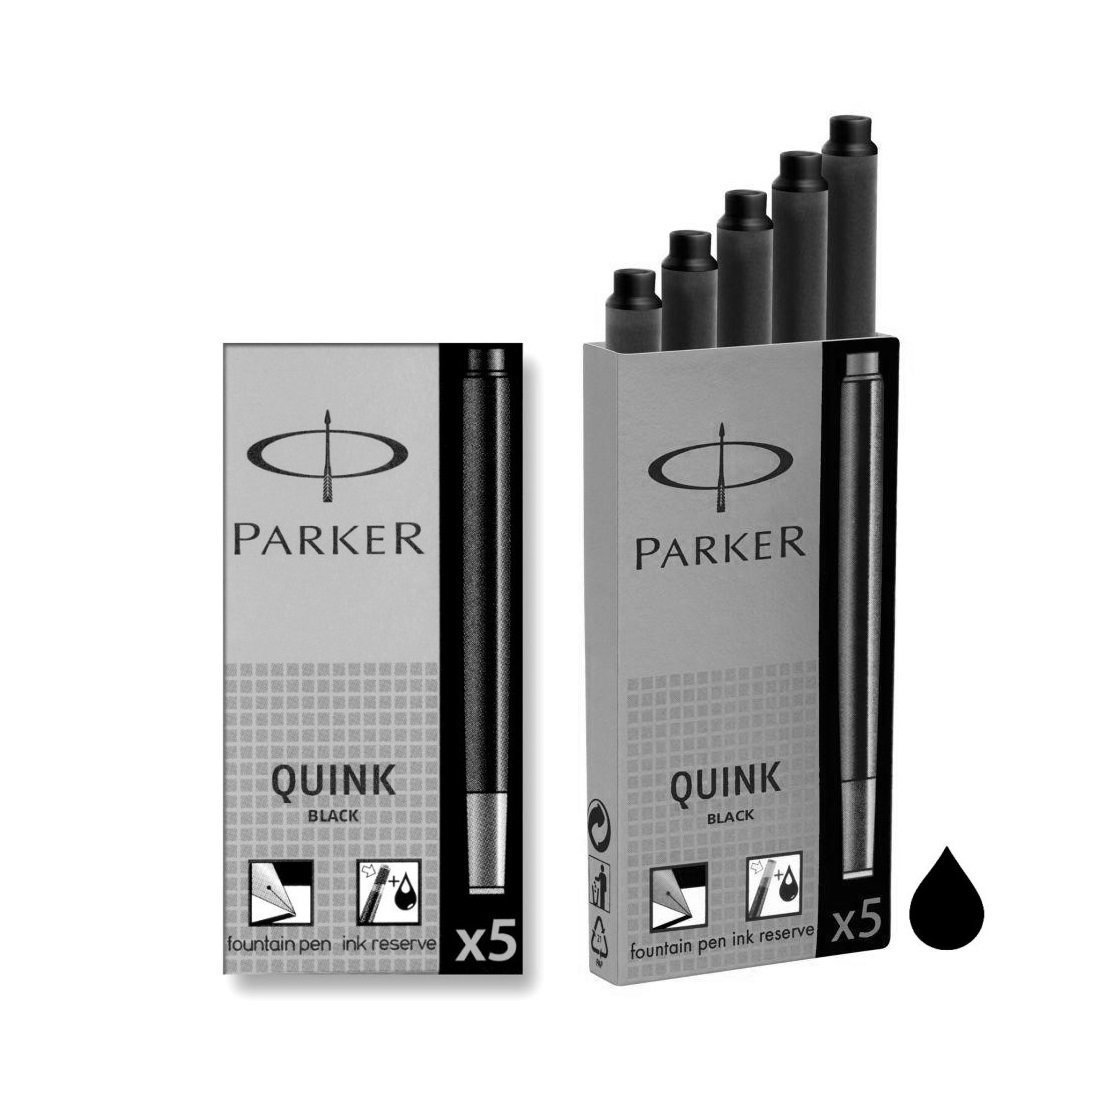 Đại lý bán ống mực bút máy Parker đen chính hãng giá rẻ nhất